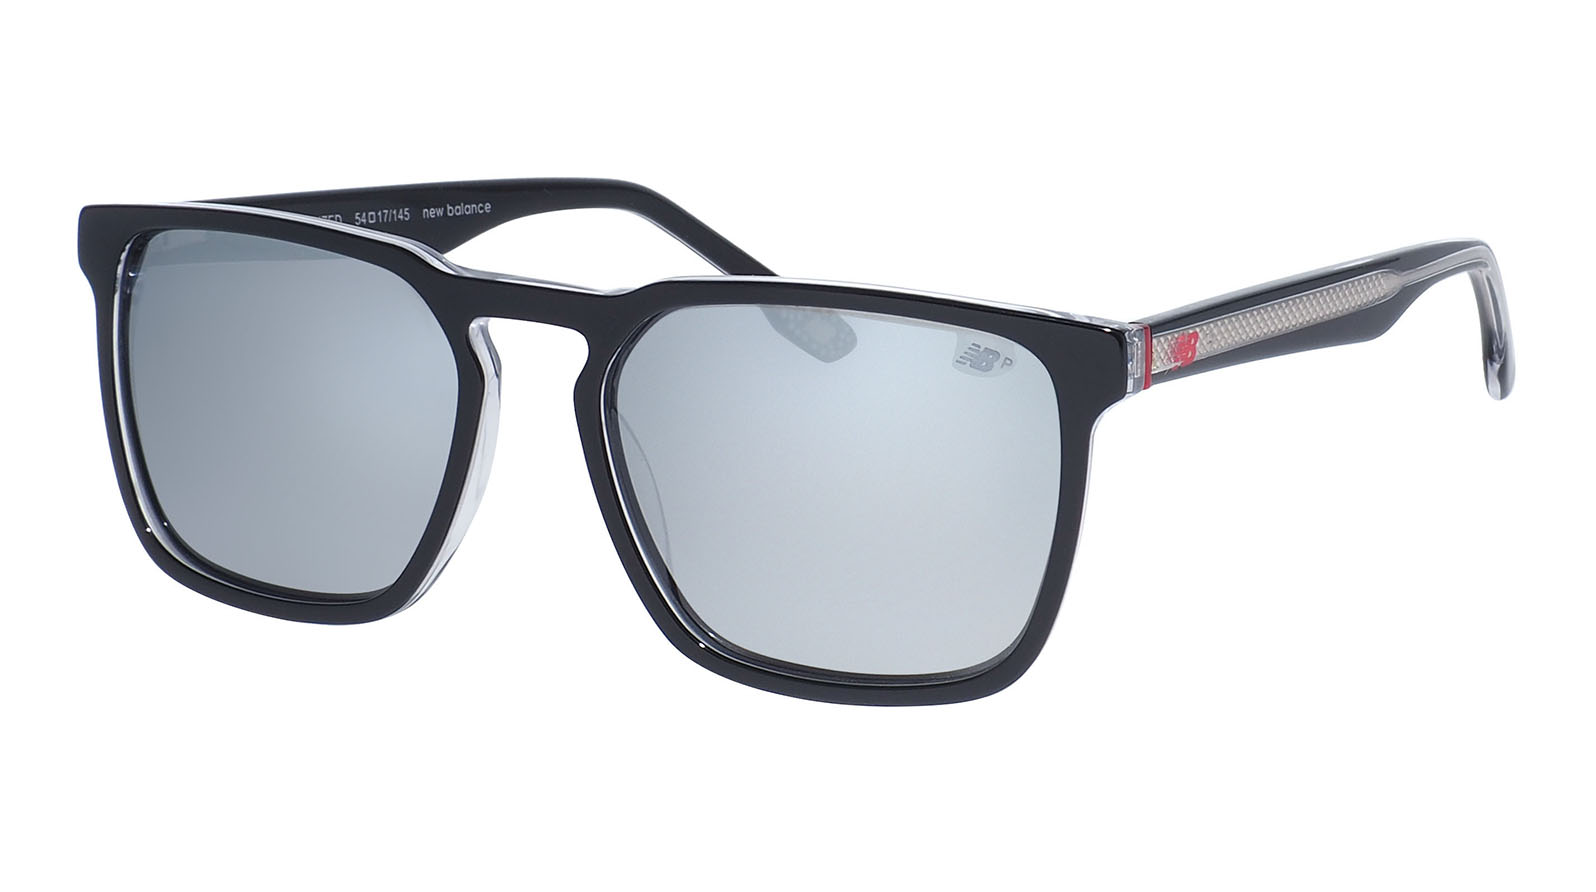 New Balance 6069 1 1pc силиконовый нескользящий полезный мягкий носовой подушечек для очков очки солнцезащитные очки